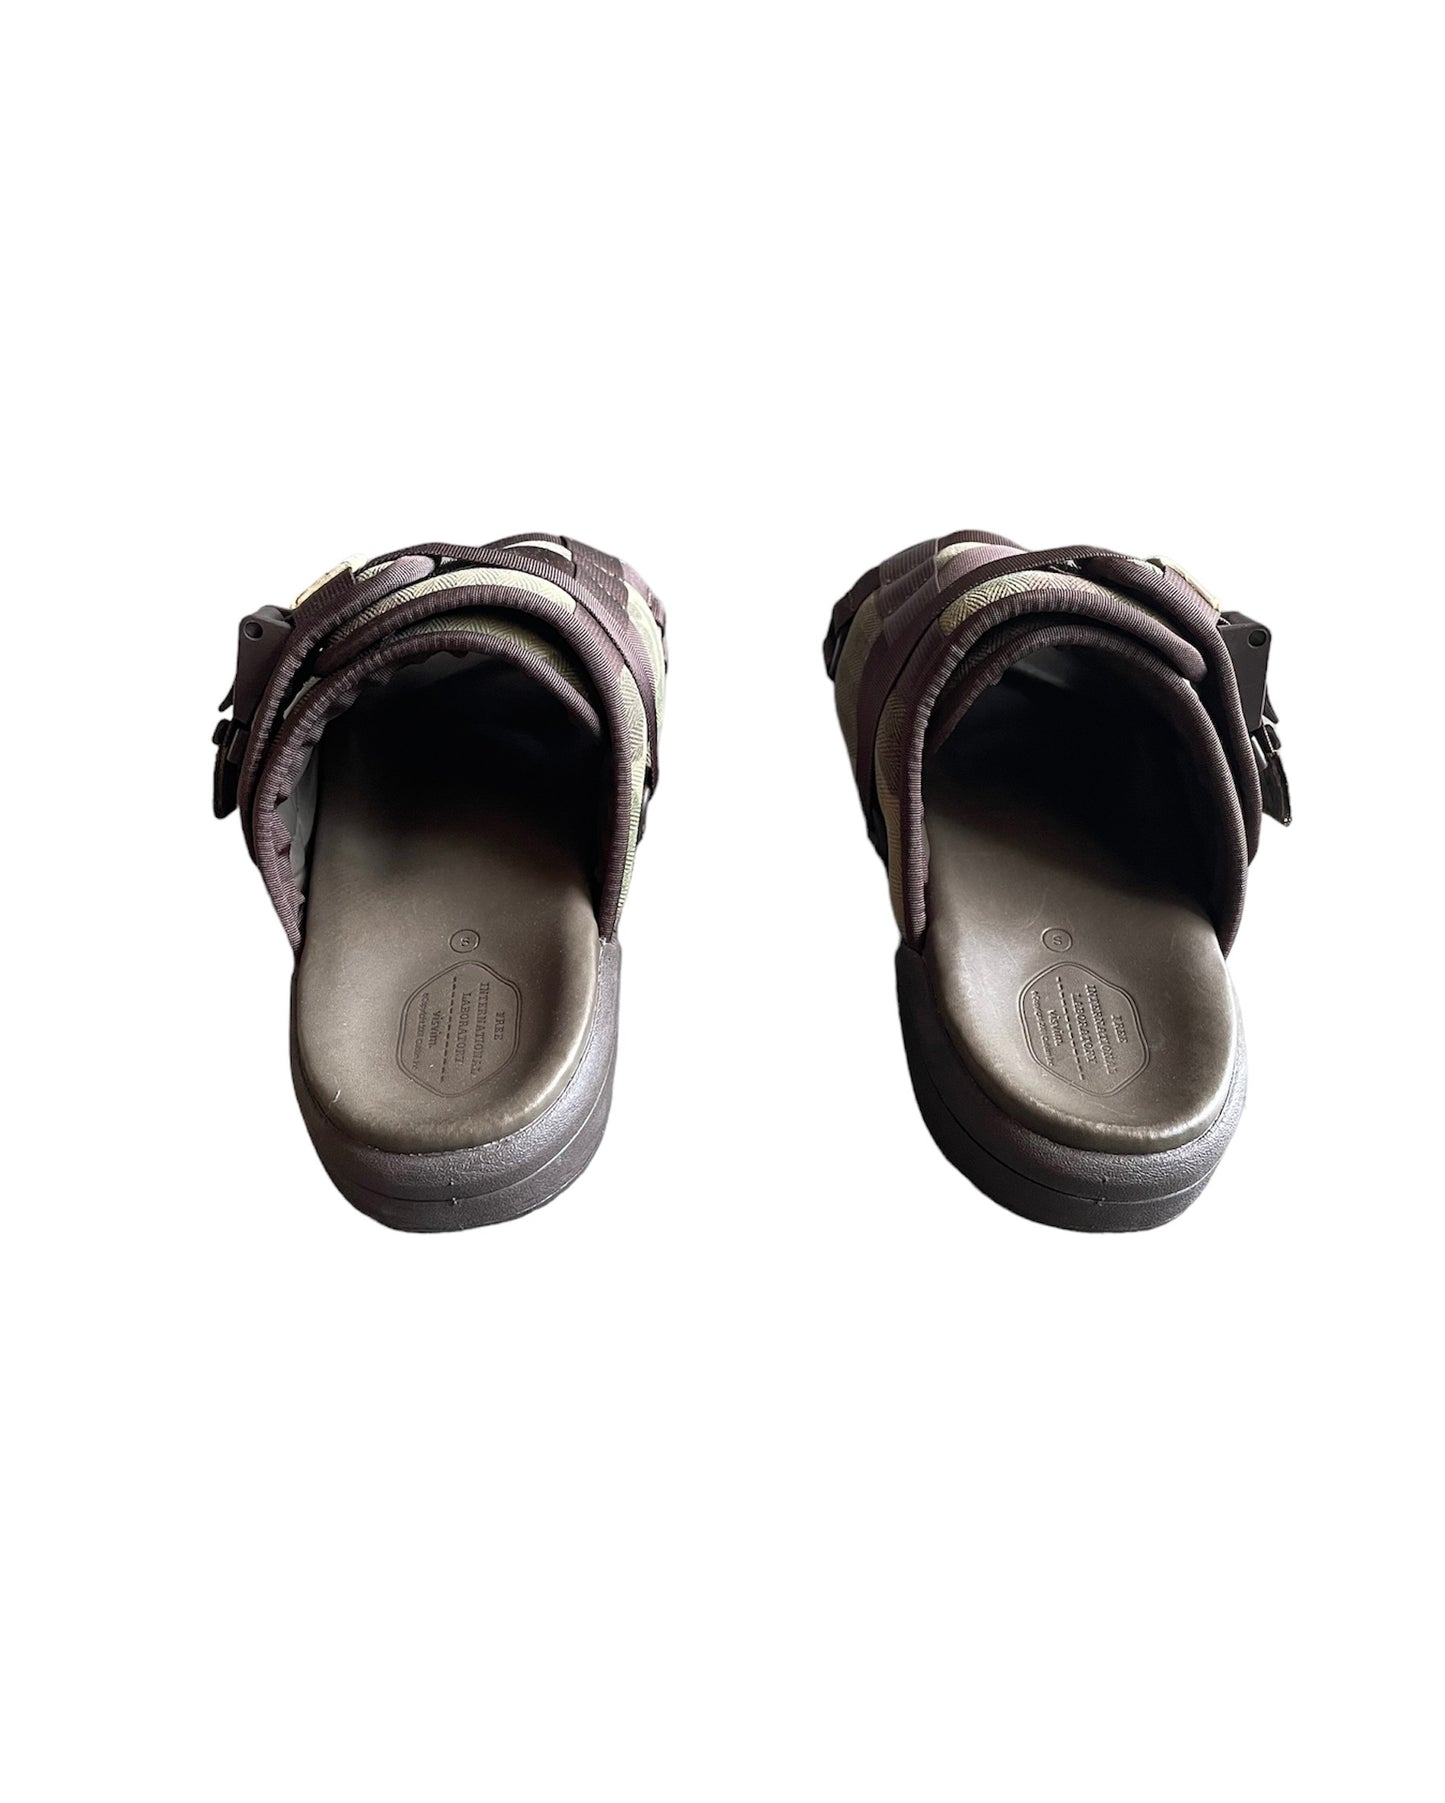 Visvim Christo “Camo” Sandals